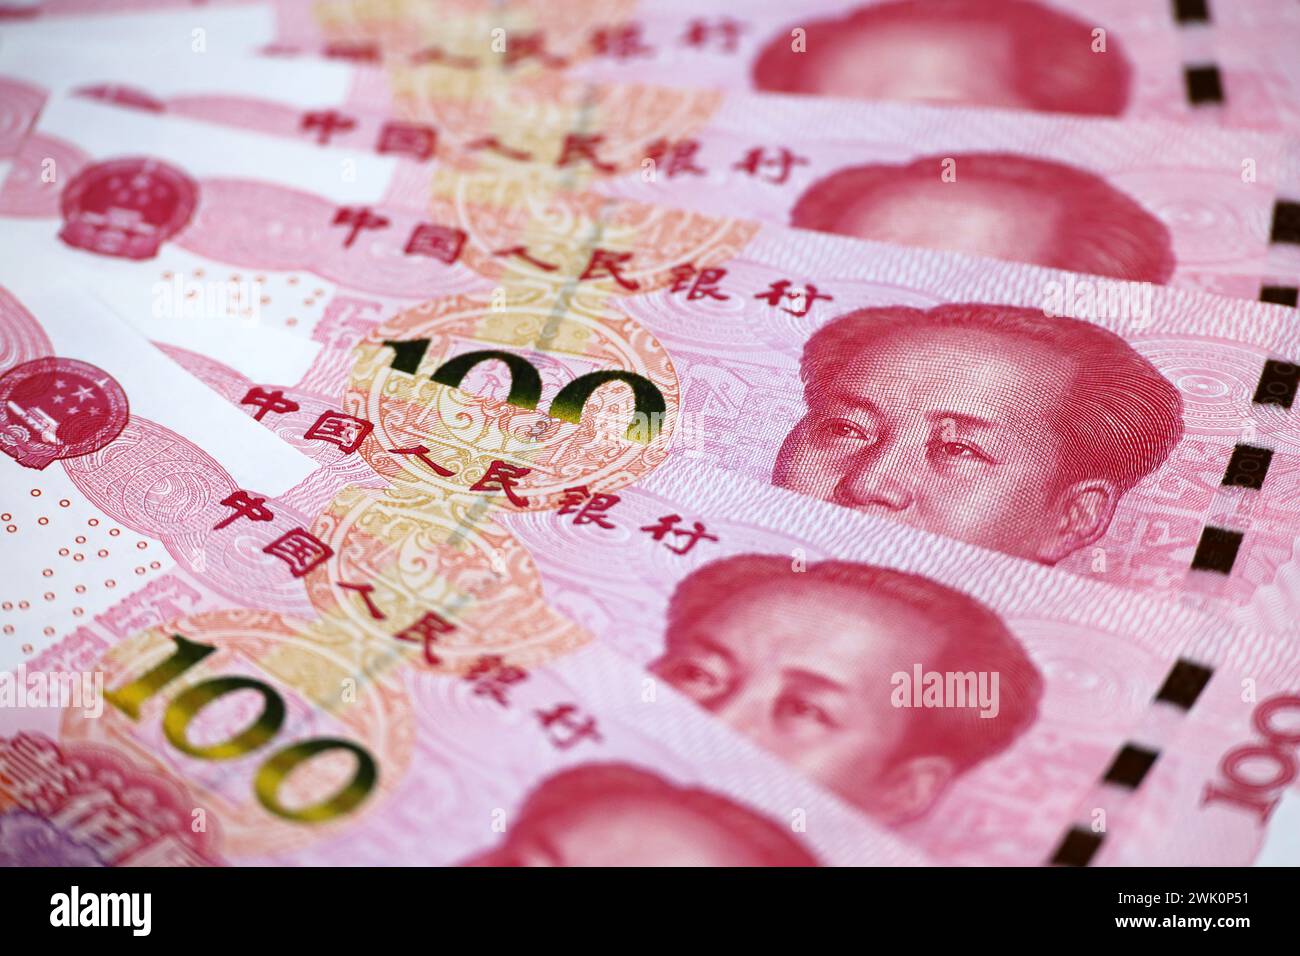 Banconote cinesi in yuan, renminbi. Concetto di economia della Cina, tasso di cambio Foto Stock